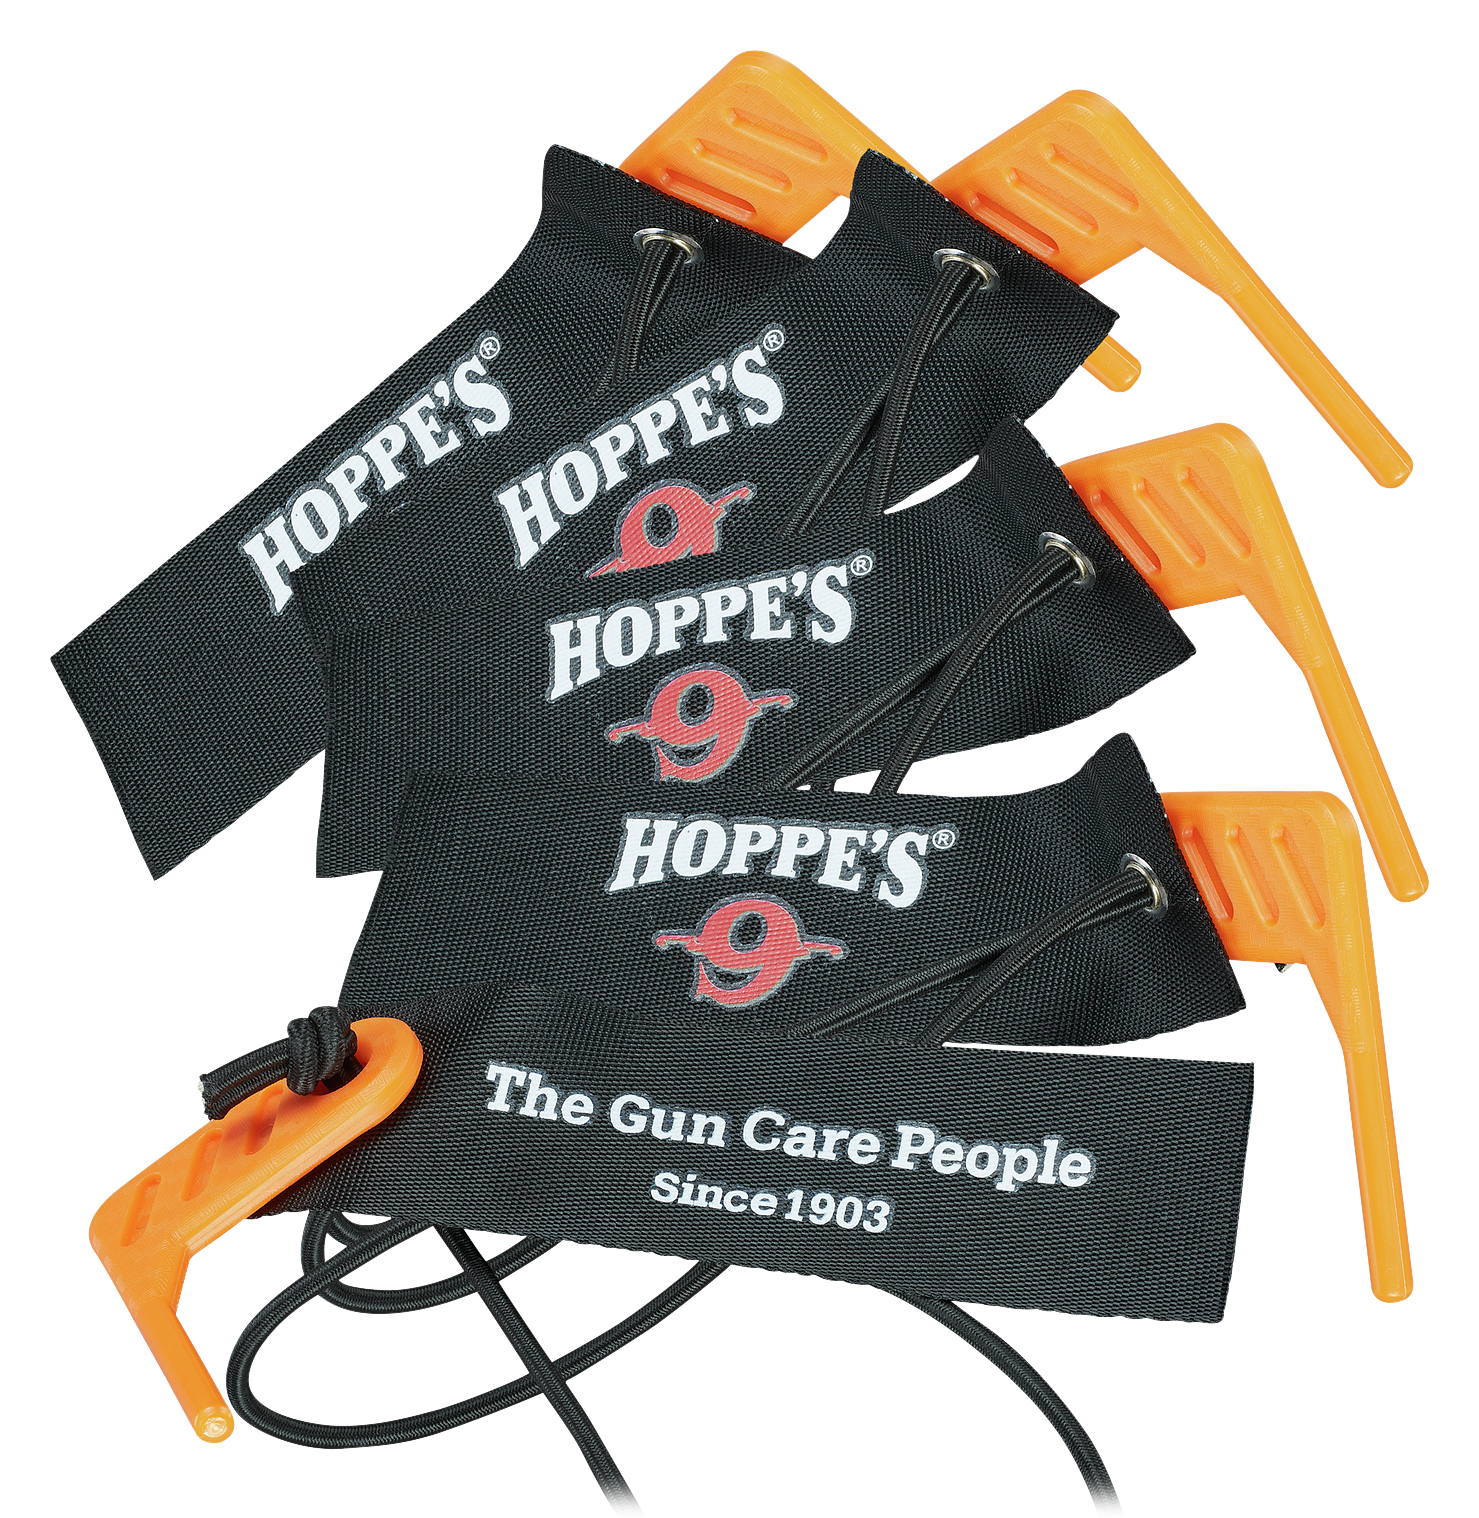 Hoppe's Empty Chamber Flag 5-Pack